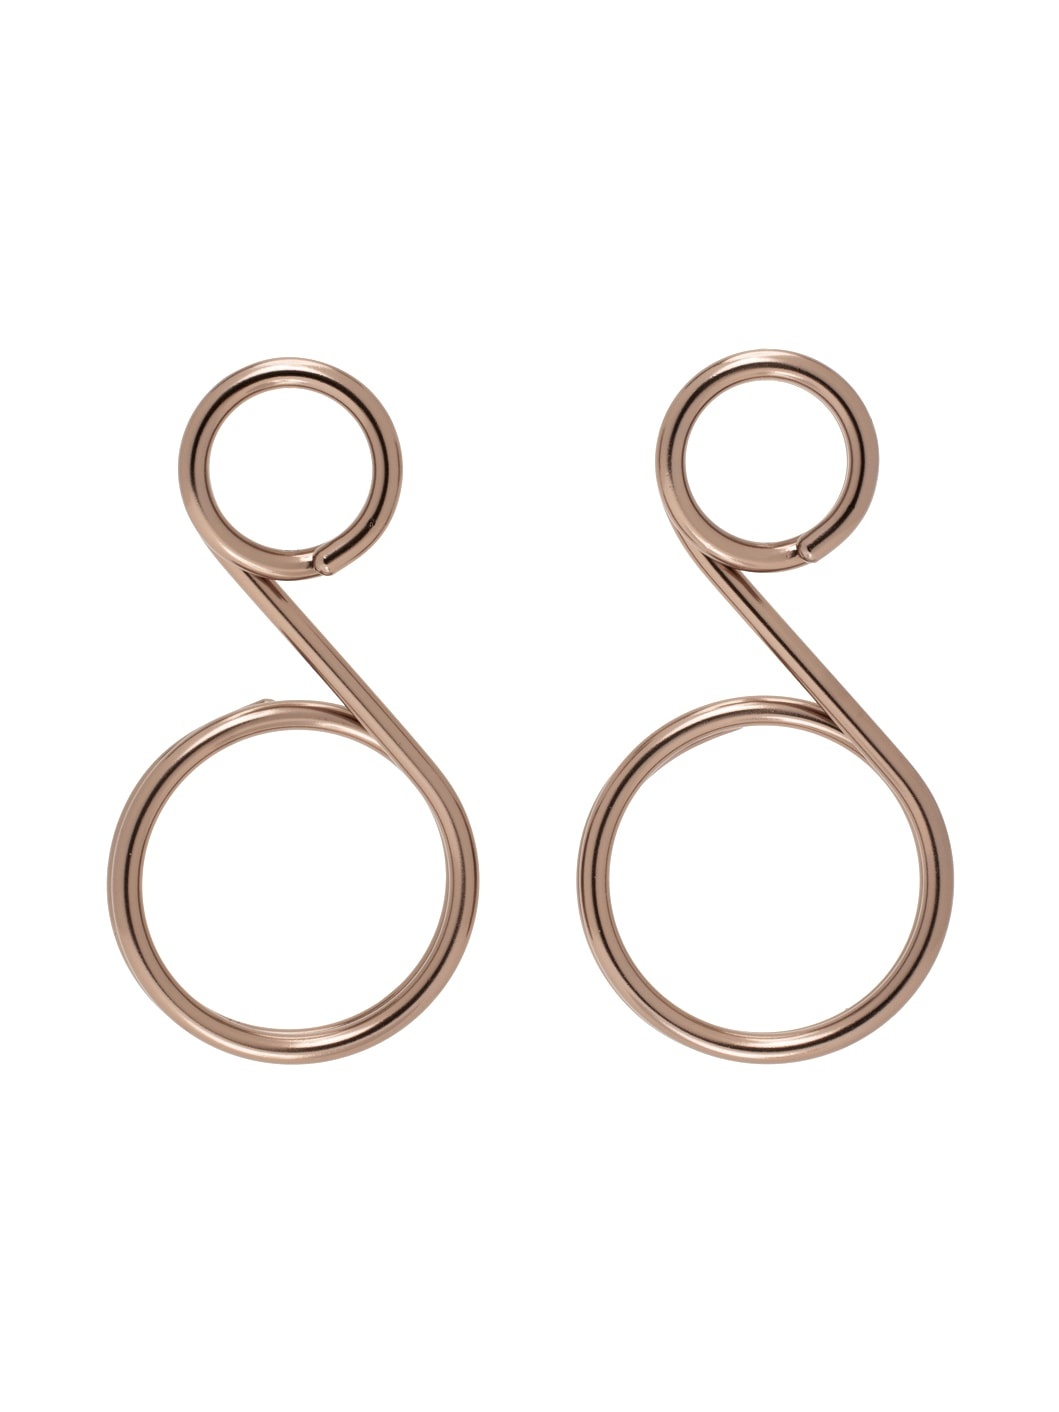 Bronze Bubble Wands Earrings - 1